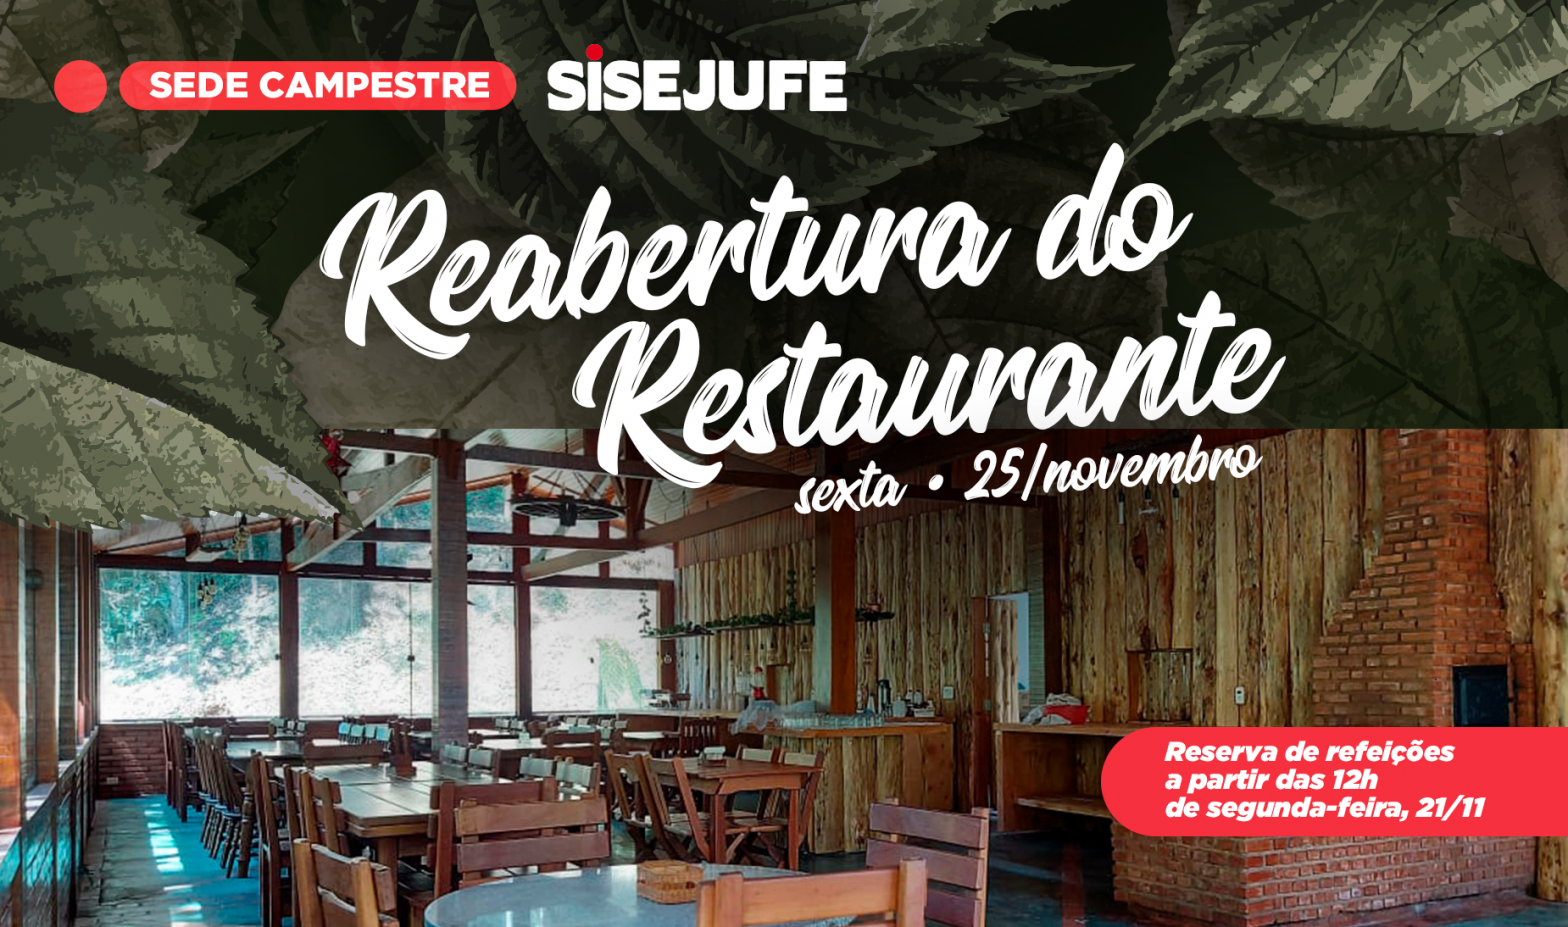 Restaurante da Sede Campestre será reaberto na próxima sexta, 25 de novembro, SISEJUFE